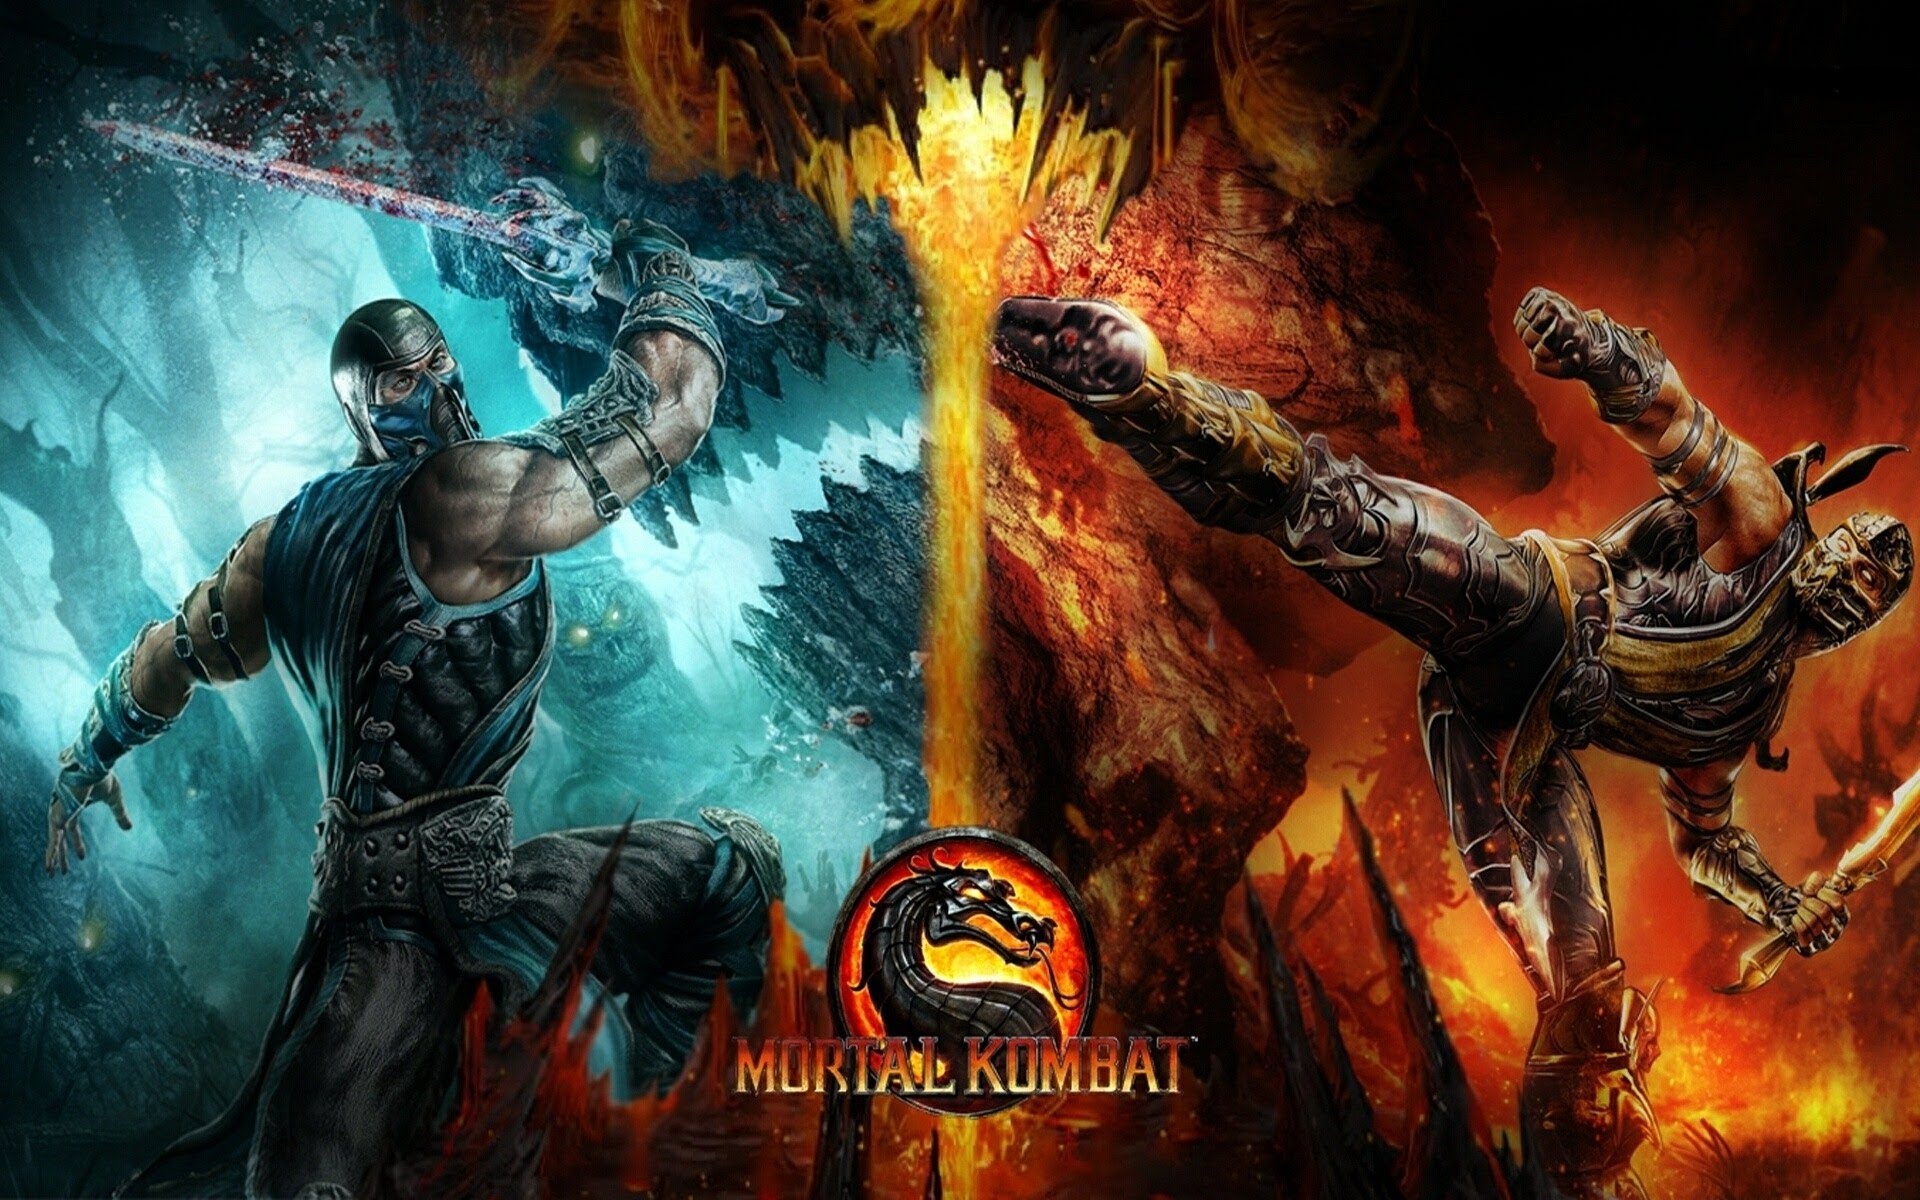 Mortal Kombat (1992 video game), Mortal Kombat Wiki